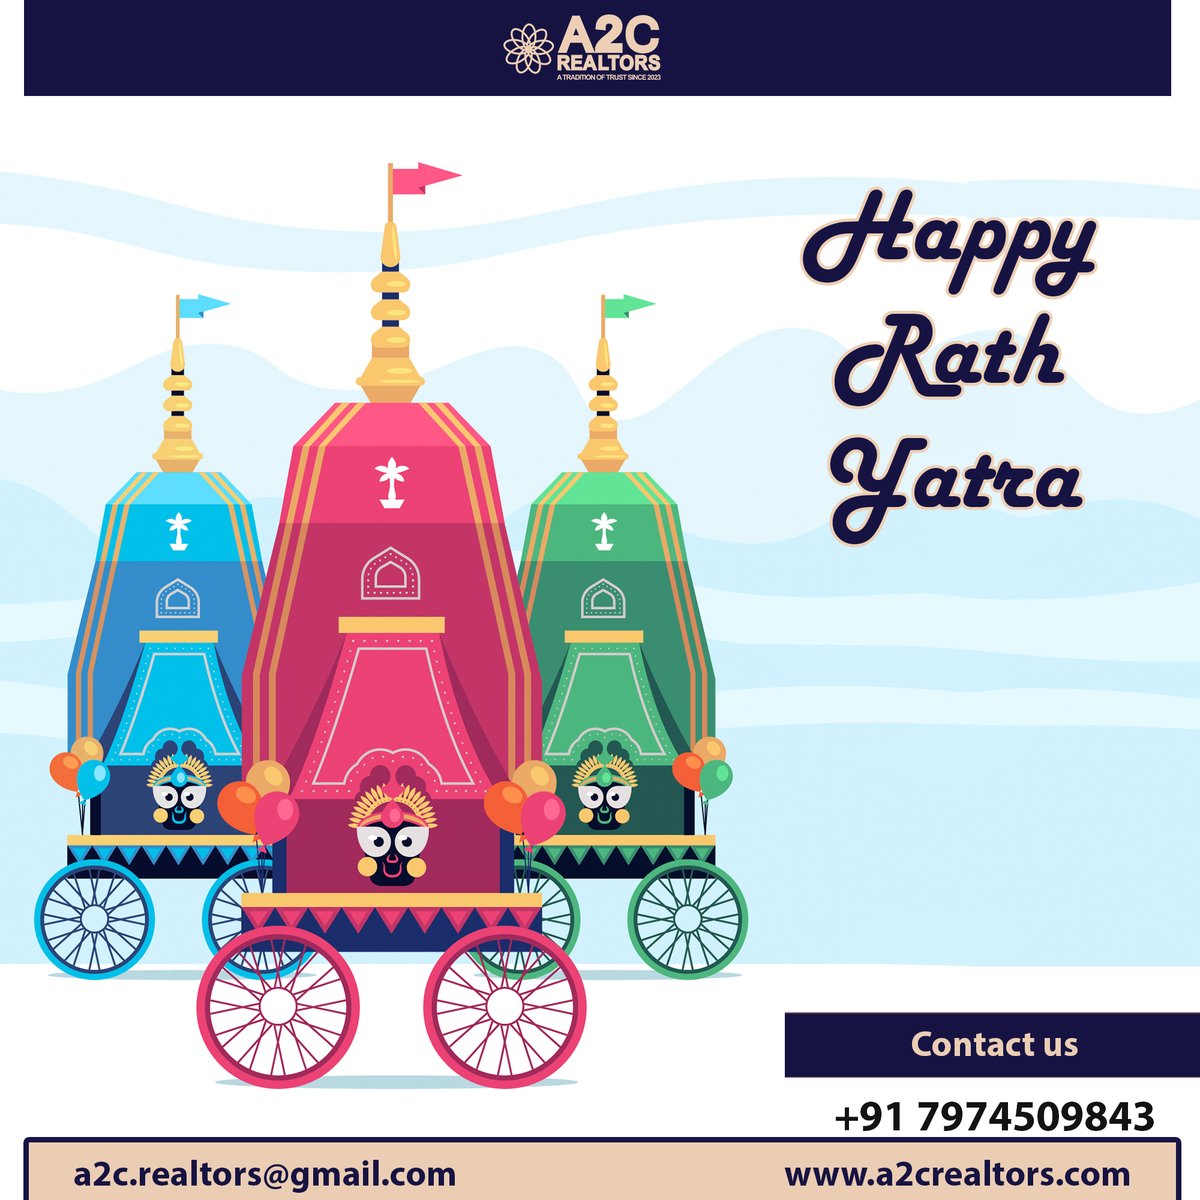 Happy Rath Yatra....

#RathaYatra #rathyatrapuri #a2crealtors #DholeraSIR #DholeraSmartCity #DholeraGreenFieldSmartCity